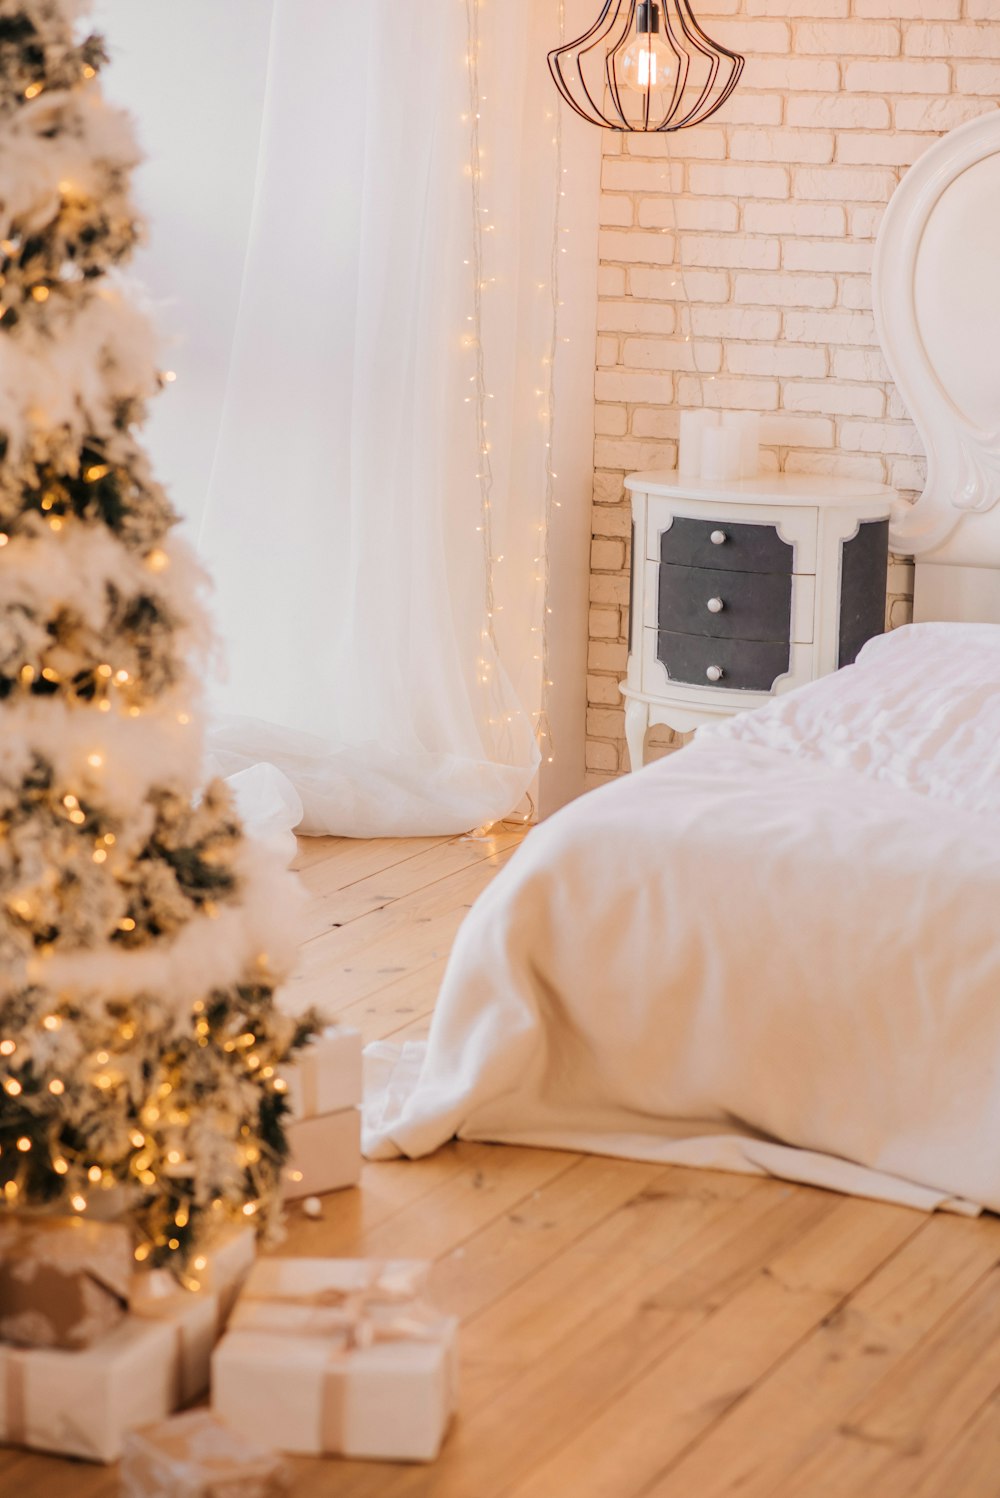 크리스마스 트리 근처의 흰색 침대